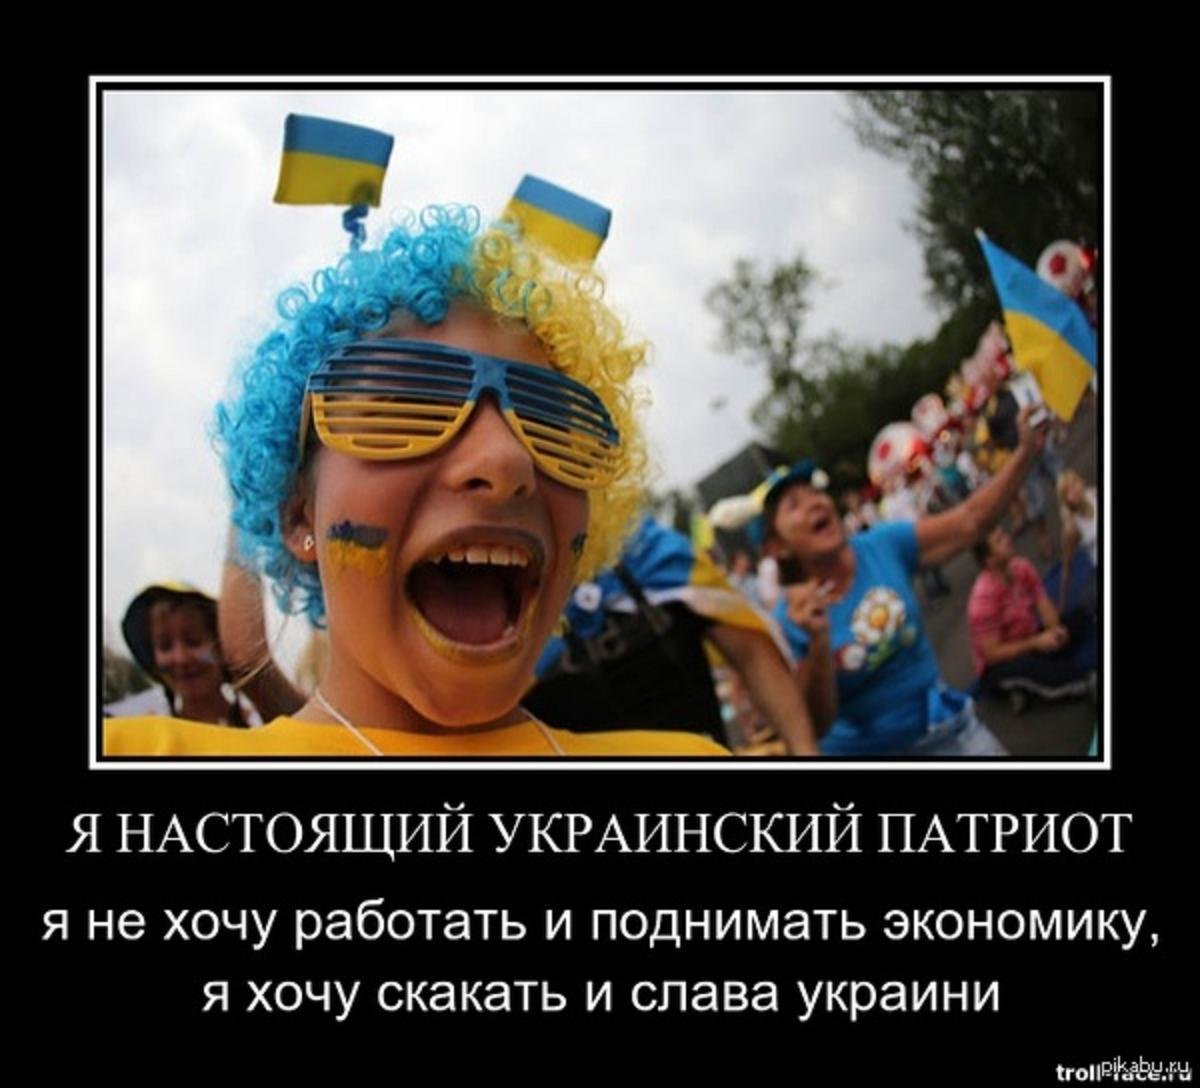 Хохлы про крокус. Приколы про украинцев. Демотиваторы про Украину. Анекдоты про Украину в картинках. Хохлы приколы.